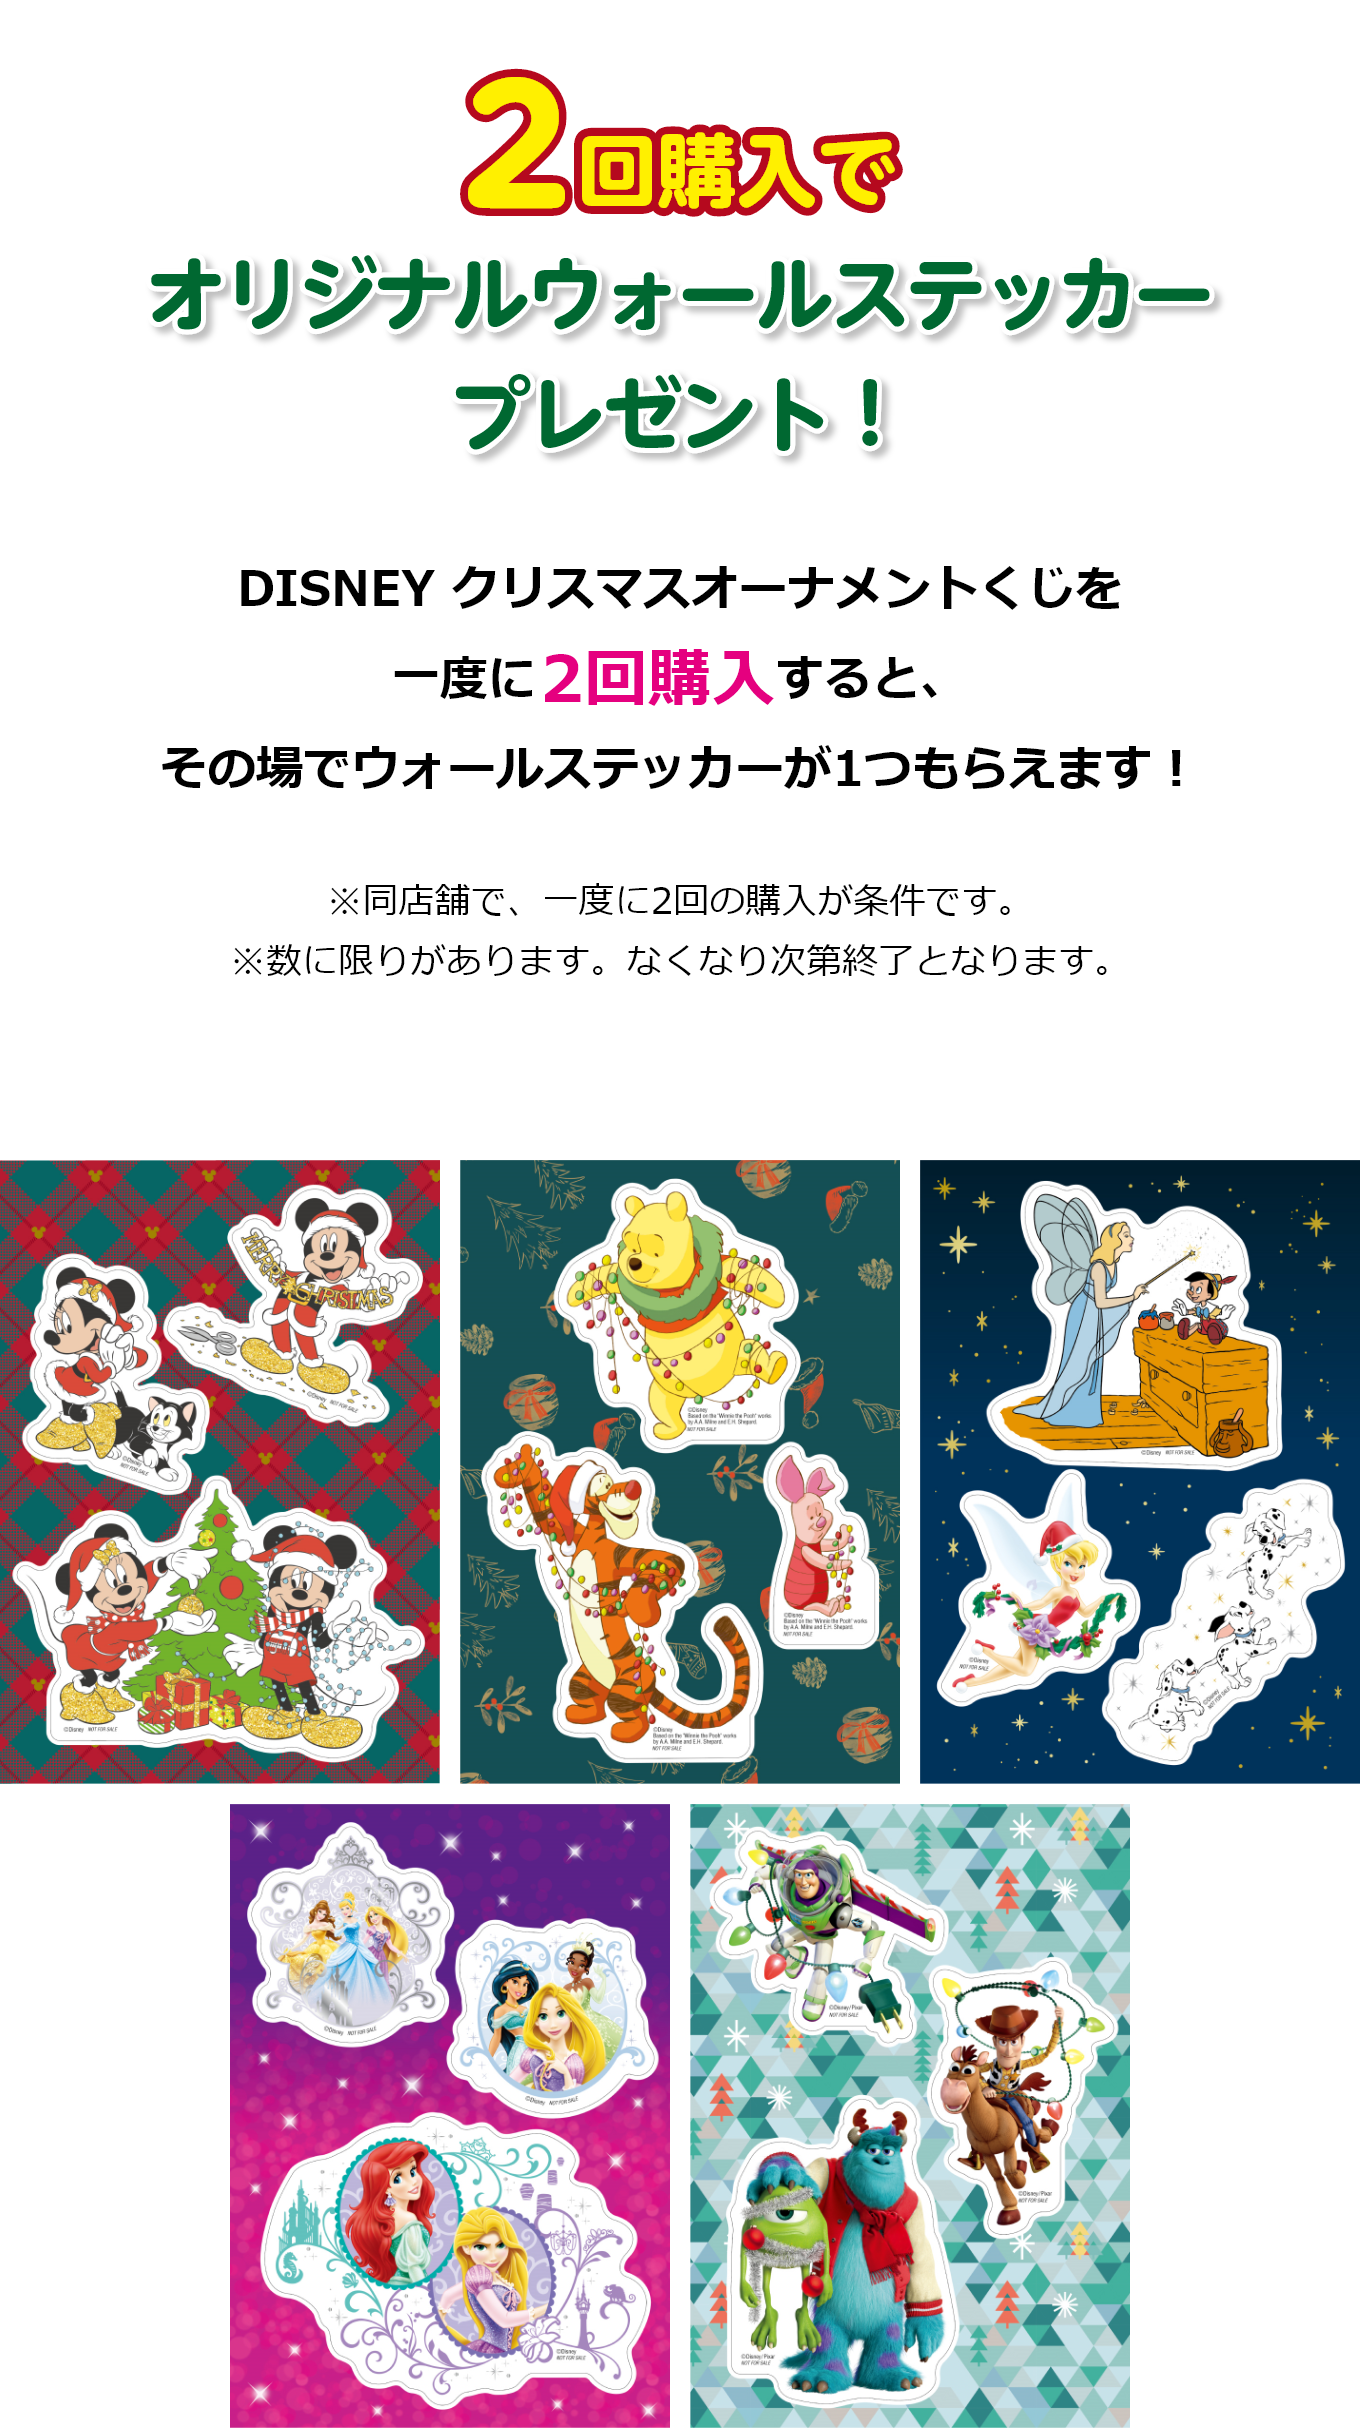 クリスマスオーナメントくじ ディズニー 2021 キャラクターグッズ